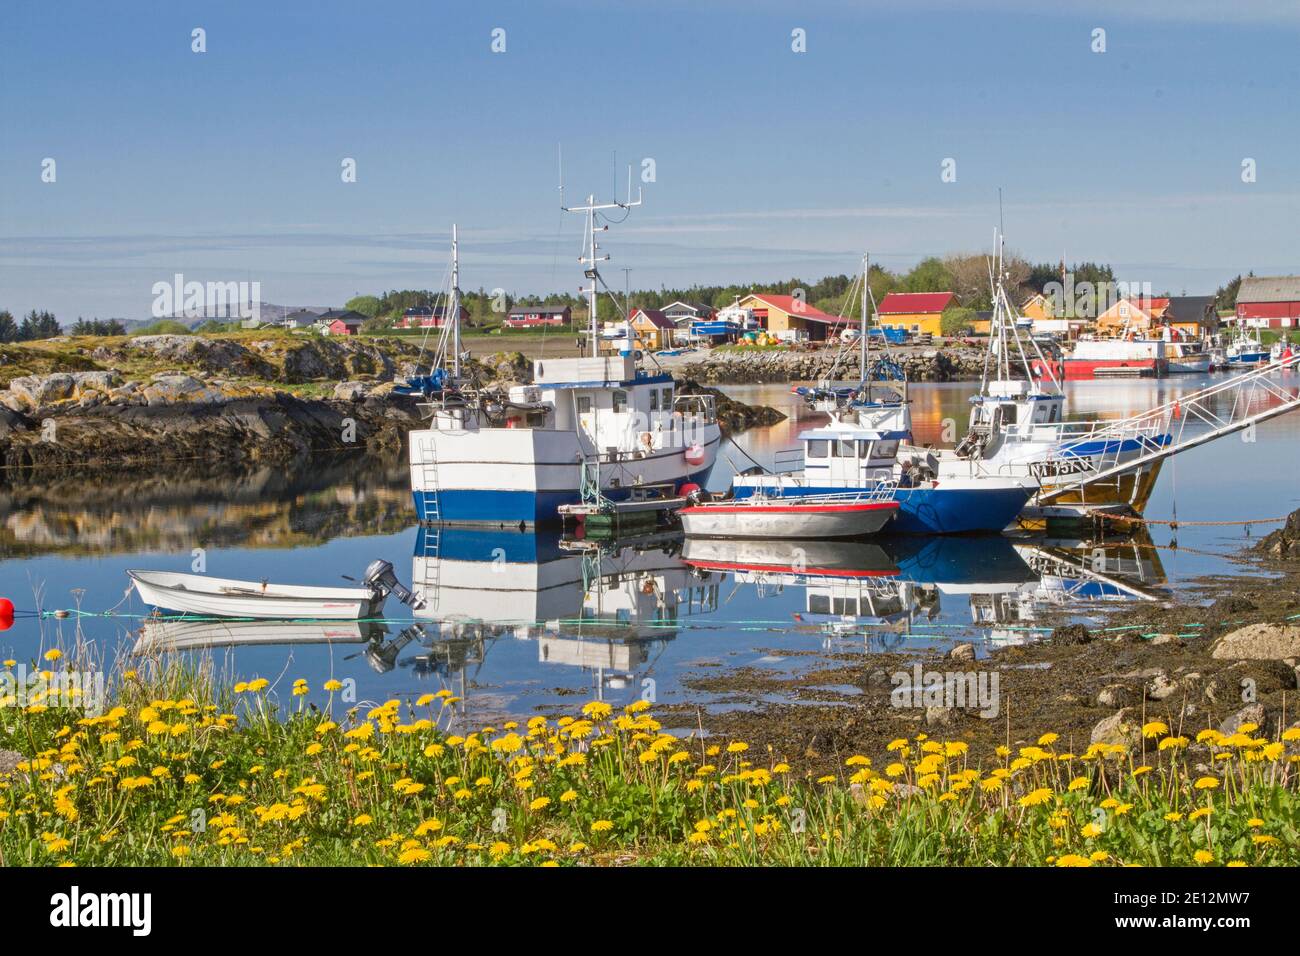 Le petit port de pêche de Lauvoyvagen sur l'île norvégienne Lauvoy Banque D'Images